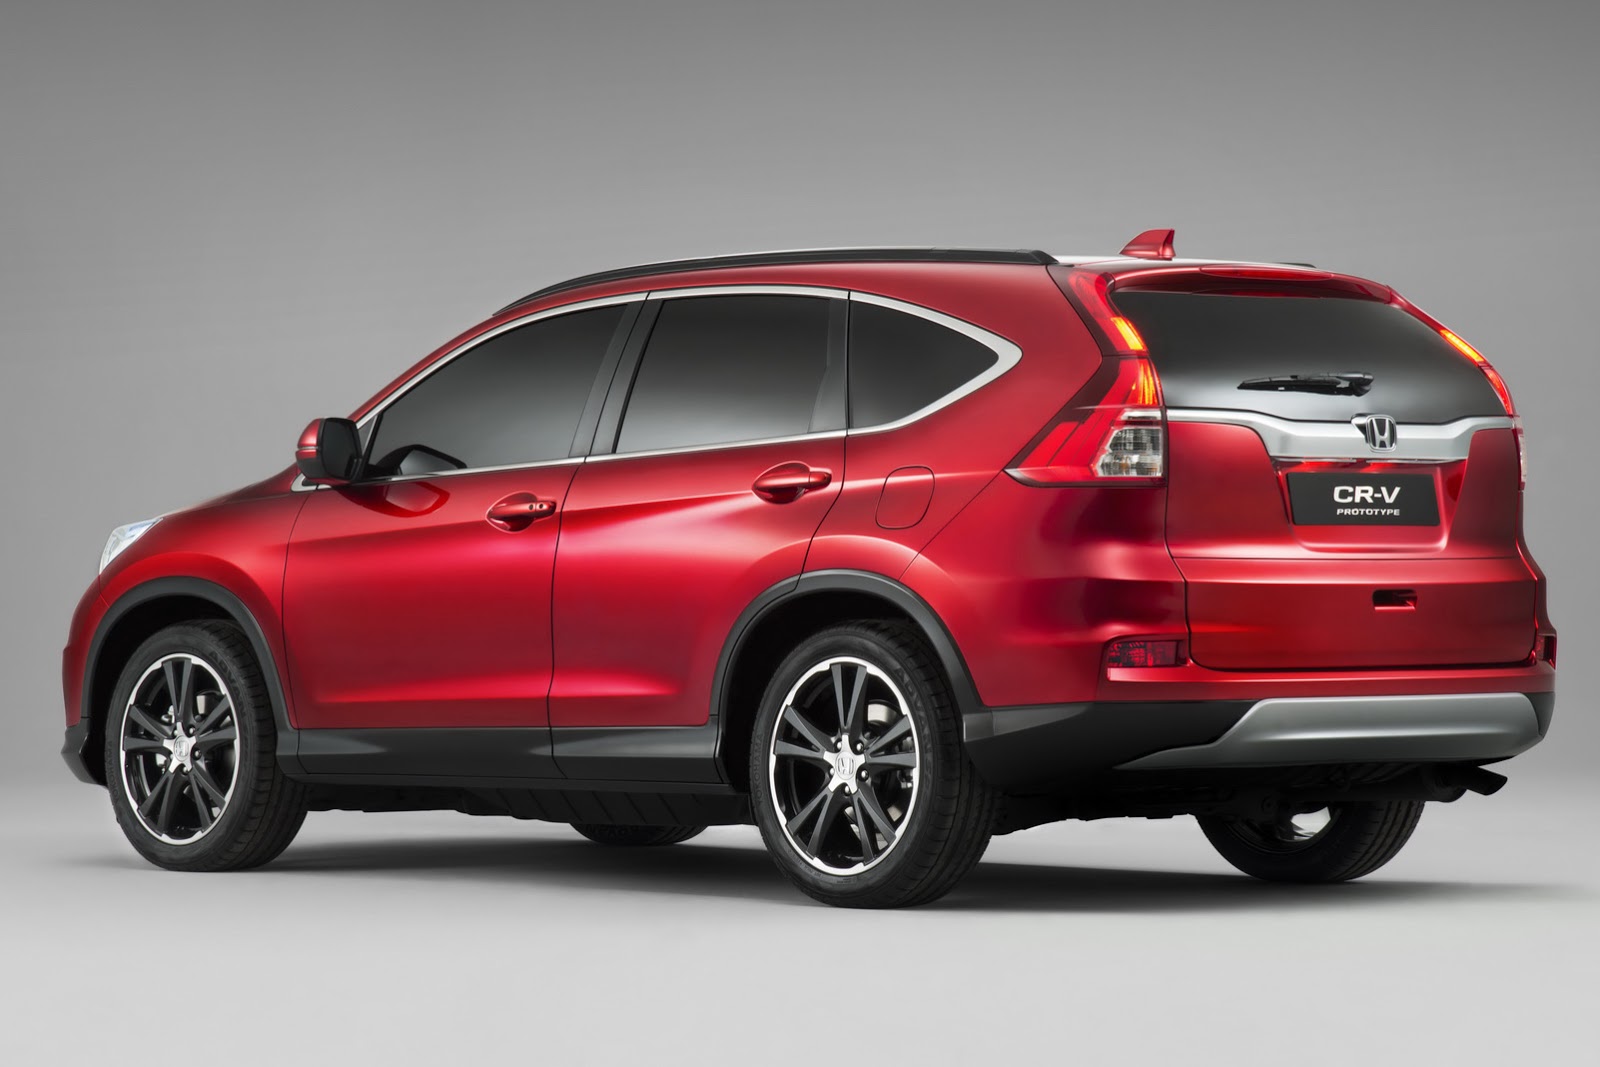 Honda's 2015 CRV Facelift for Europe Gets New 160PS 1.6L